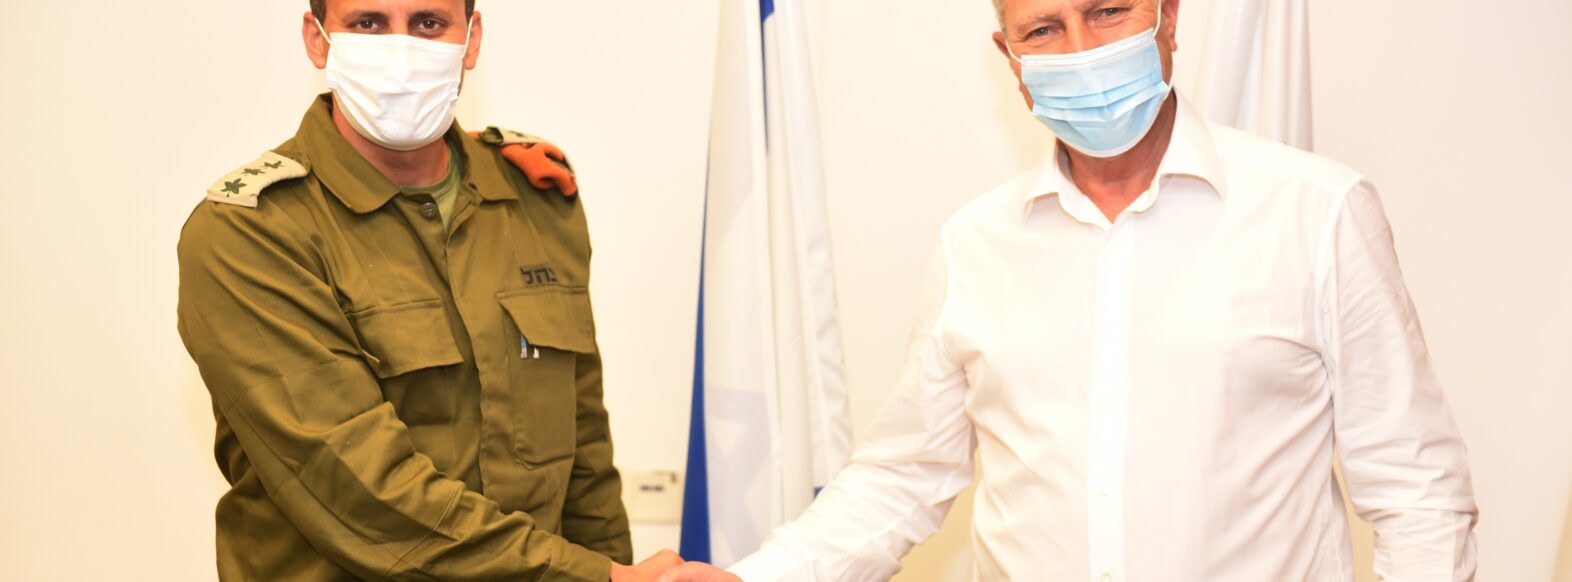 ביקור מפקד מחוז חיפה בפיקוד העורף אל”מ אלעד אדרי בקרית אתא